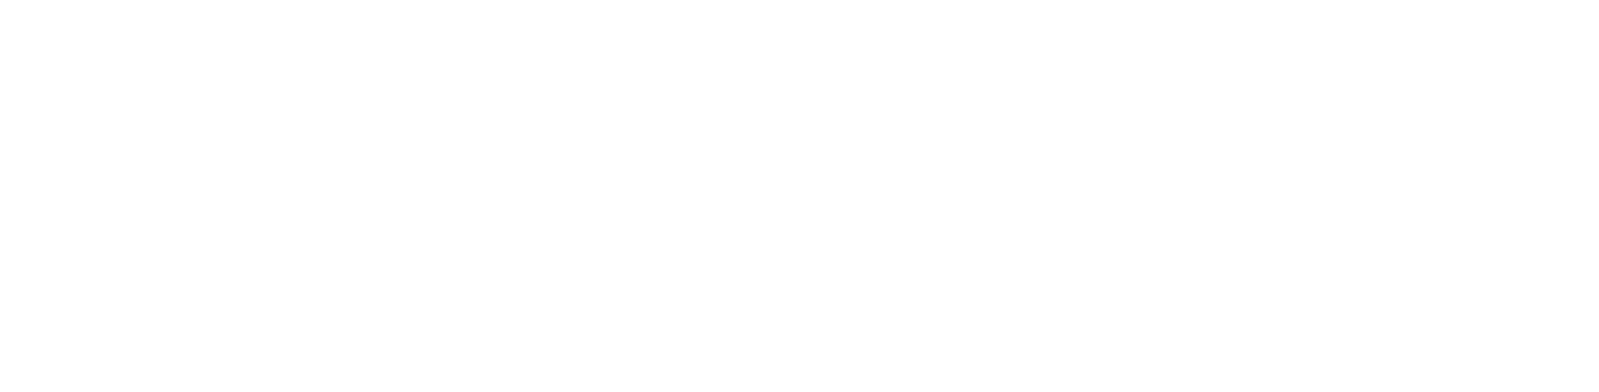 EOG Resources Logo groß für dunkle Hintergründe (transparentes PNG)